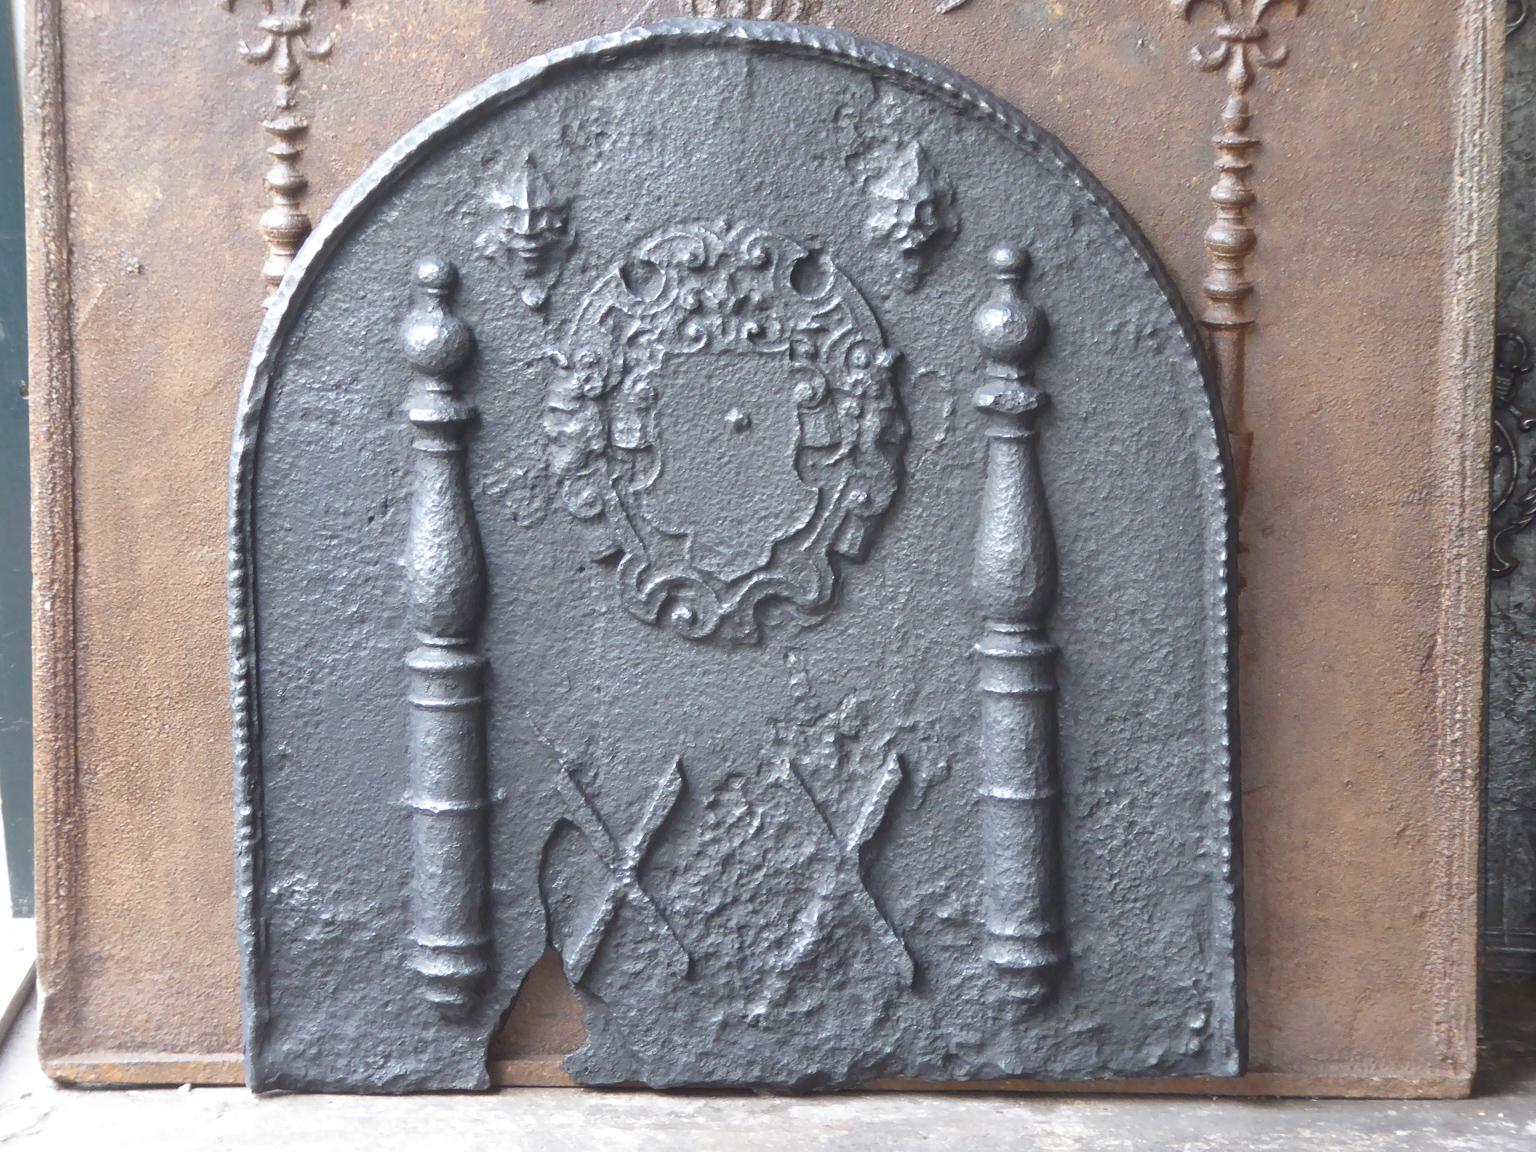 Französischer Louis XIII-Feuerboden aus dem 17. Jahrhundert mit einem Wappen und zwei Herkulessäulen. Die Säulen verweisen auf die Keule des Herkules und symbolisieren Stärke. Die Feuerrückwand ist aus Gusseisen und hat eine schwarze Patina.